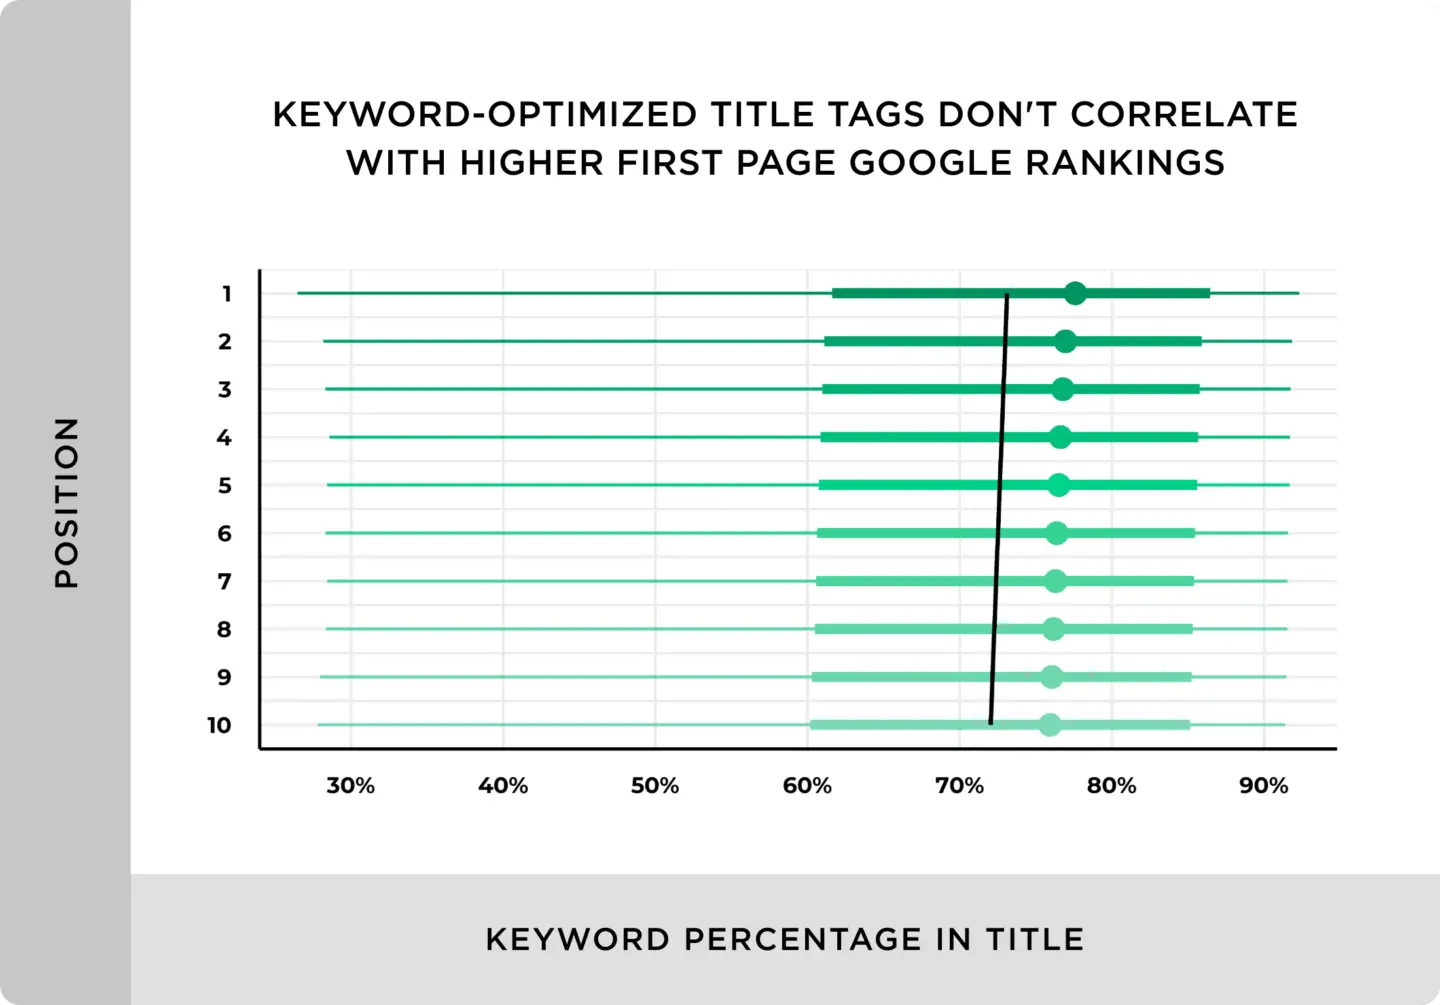 Mặc dù hầu hết các trang đứng TOP đều có keyword ở thẻ tiêu đề, nhưng những tiêu đề tối ưu từ khóa (Keyword-optimized) không liên quan đến việc có thứ hạng cao hơn